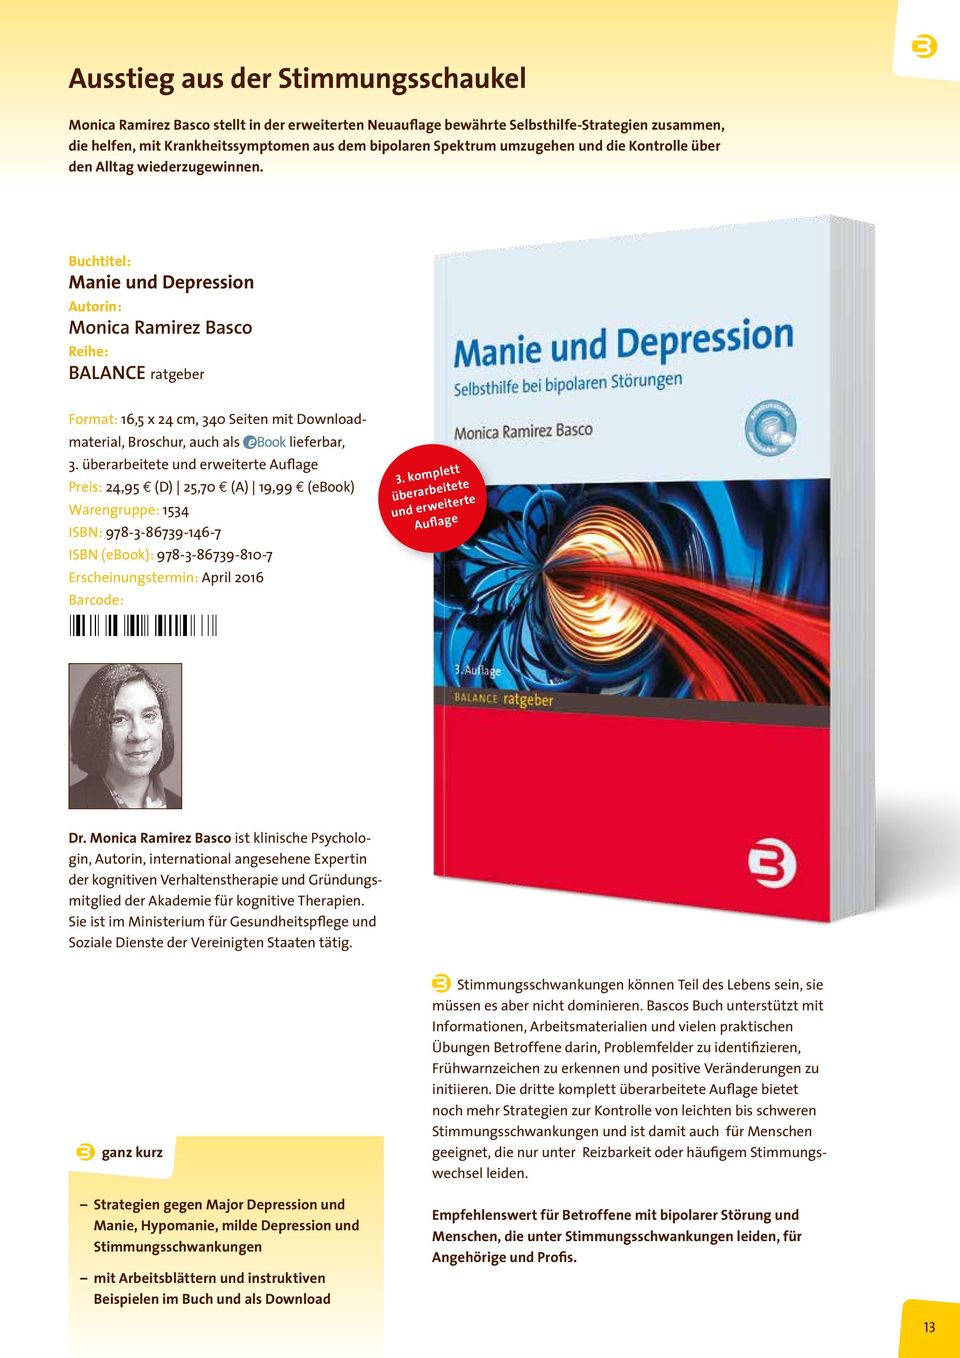 Buchtitel: Manie und Depression Autorin: Monica Ramirez Basco Reihe: BALANCE ratgeber Format: 16,5 x 24 cm, 340 Seiten mit Downloadmaterial, Broschur, auch als lieferbar, 3.